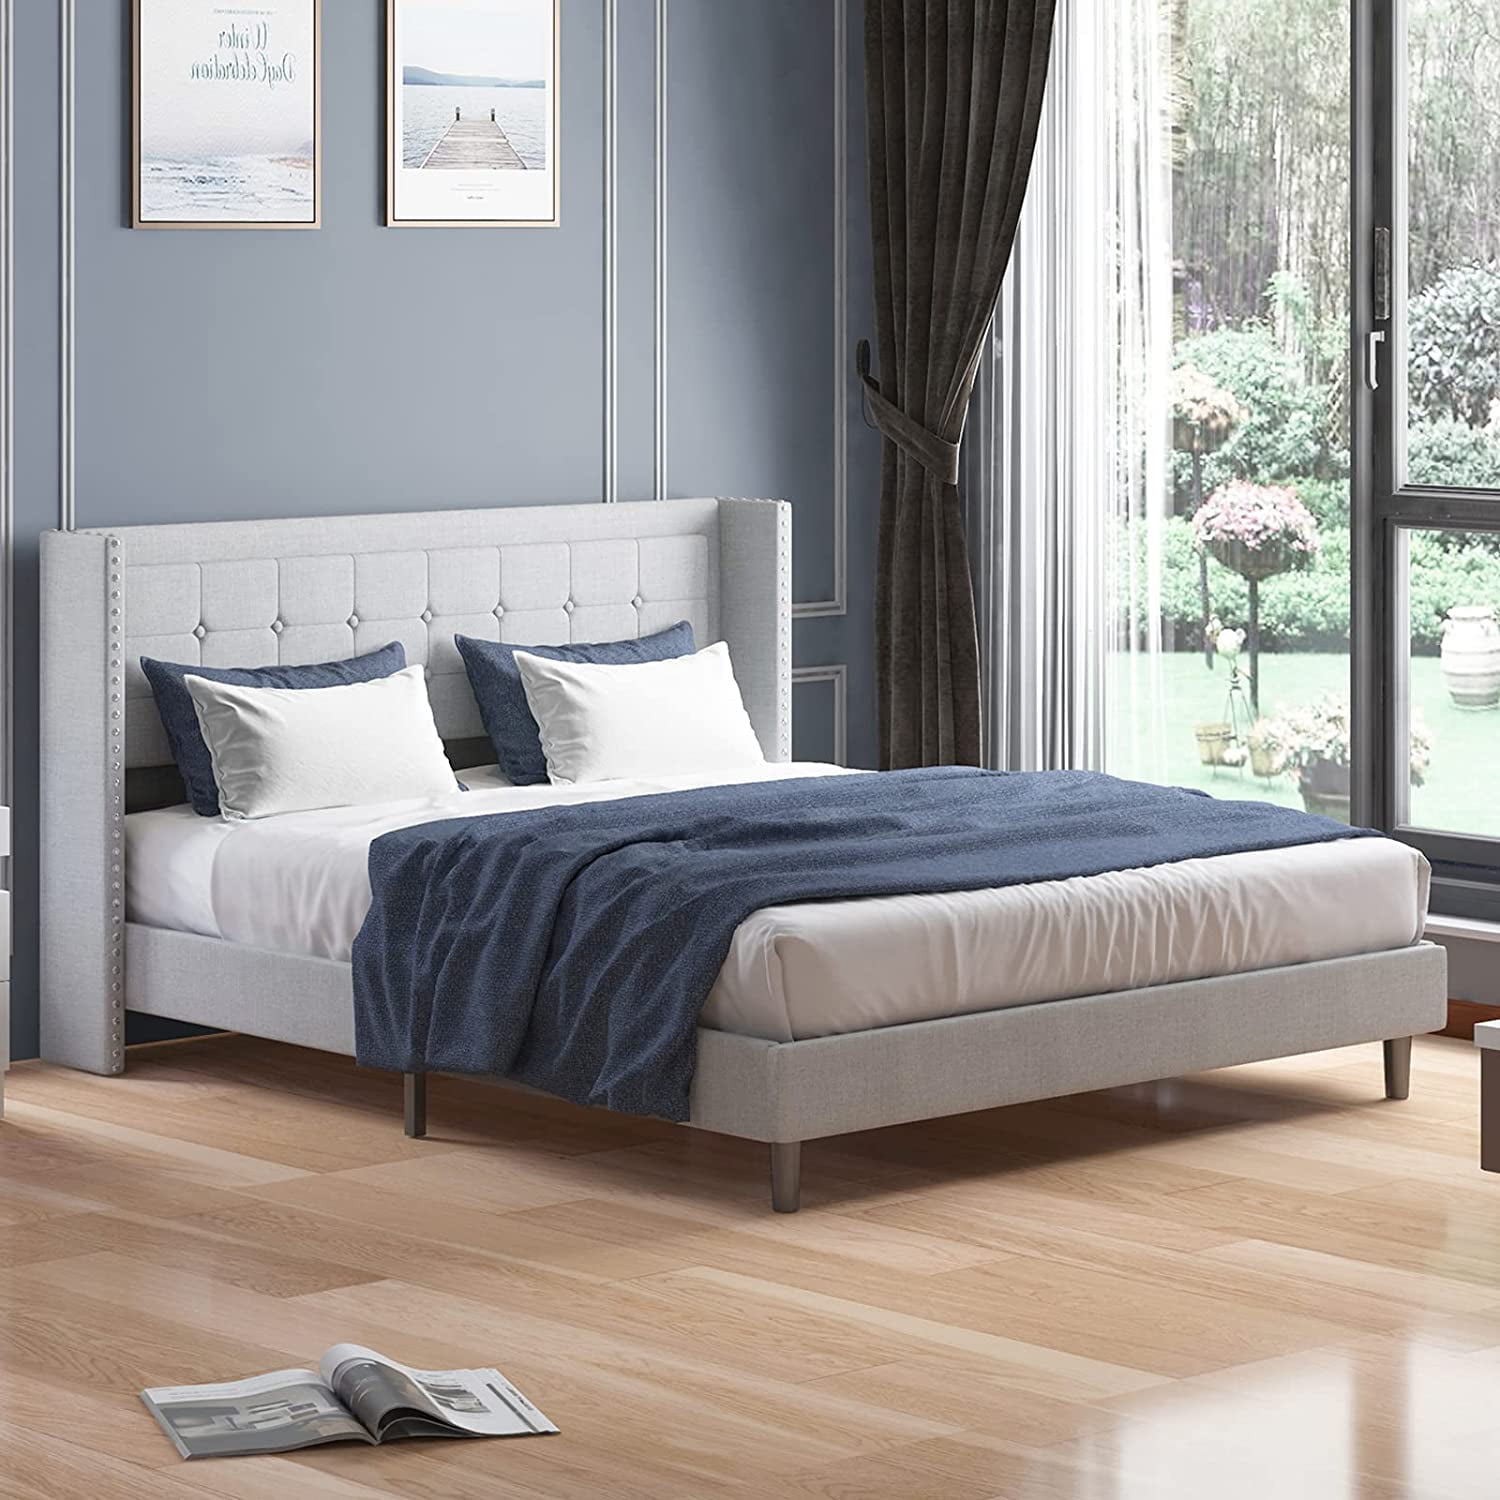 Solid Wood Platform Bed W/Headboard Design Full Size Bed Frame Wood Slat Support 